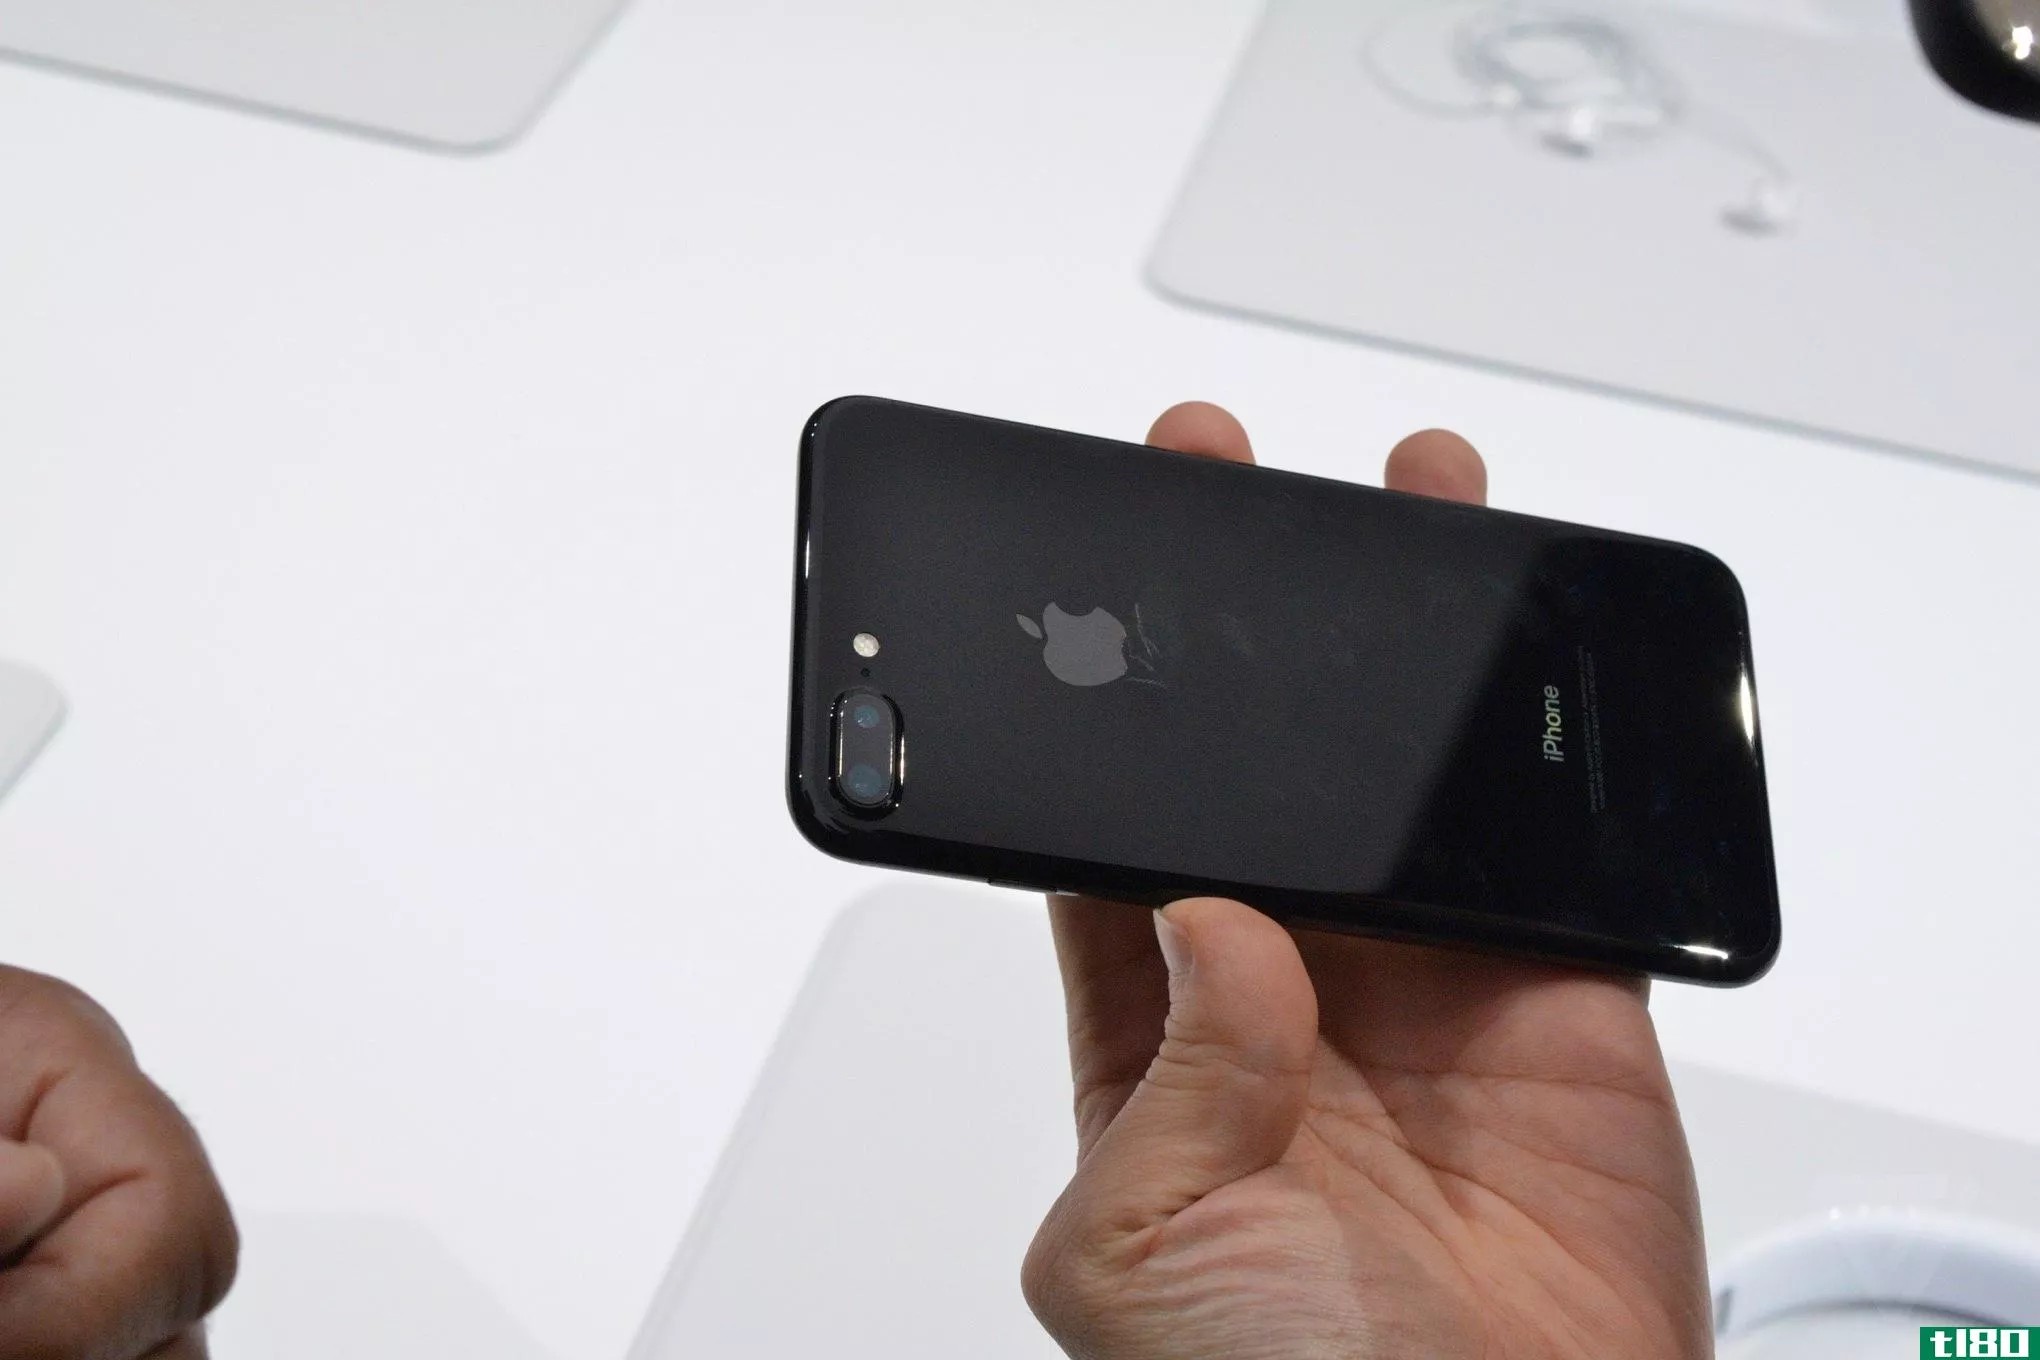 苹果警告说，它的黑色iphone7很容易刮伤